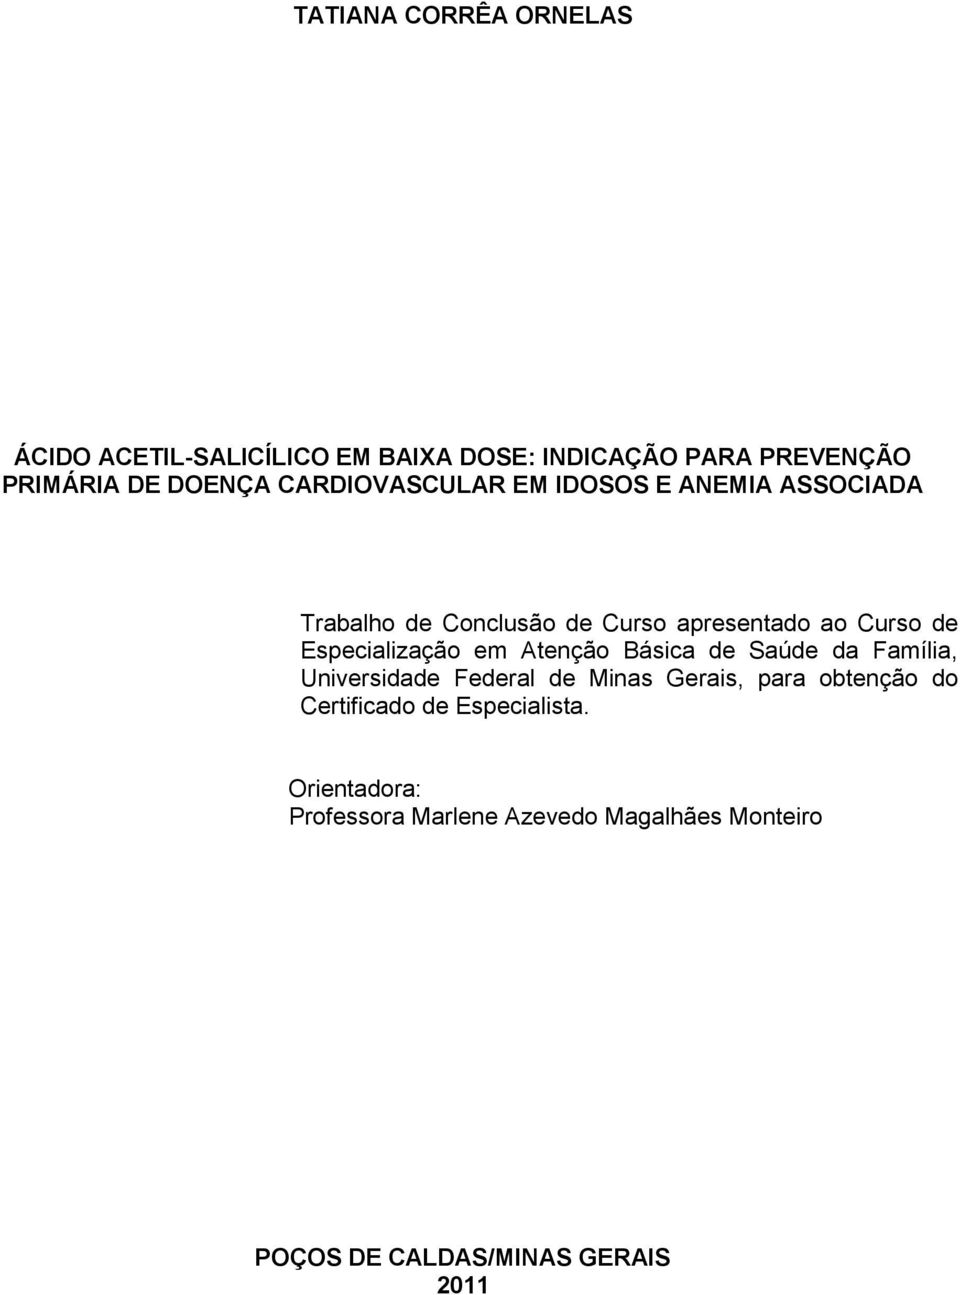 Especialização em Atenção Básica de Saúde da Família, Universidade Federal de Minas Gerais, para obtenção do